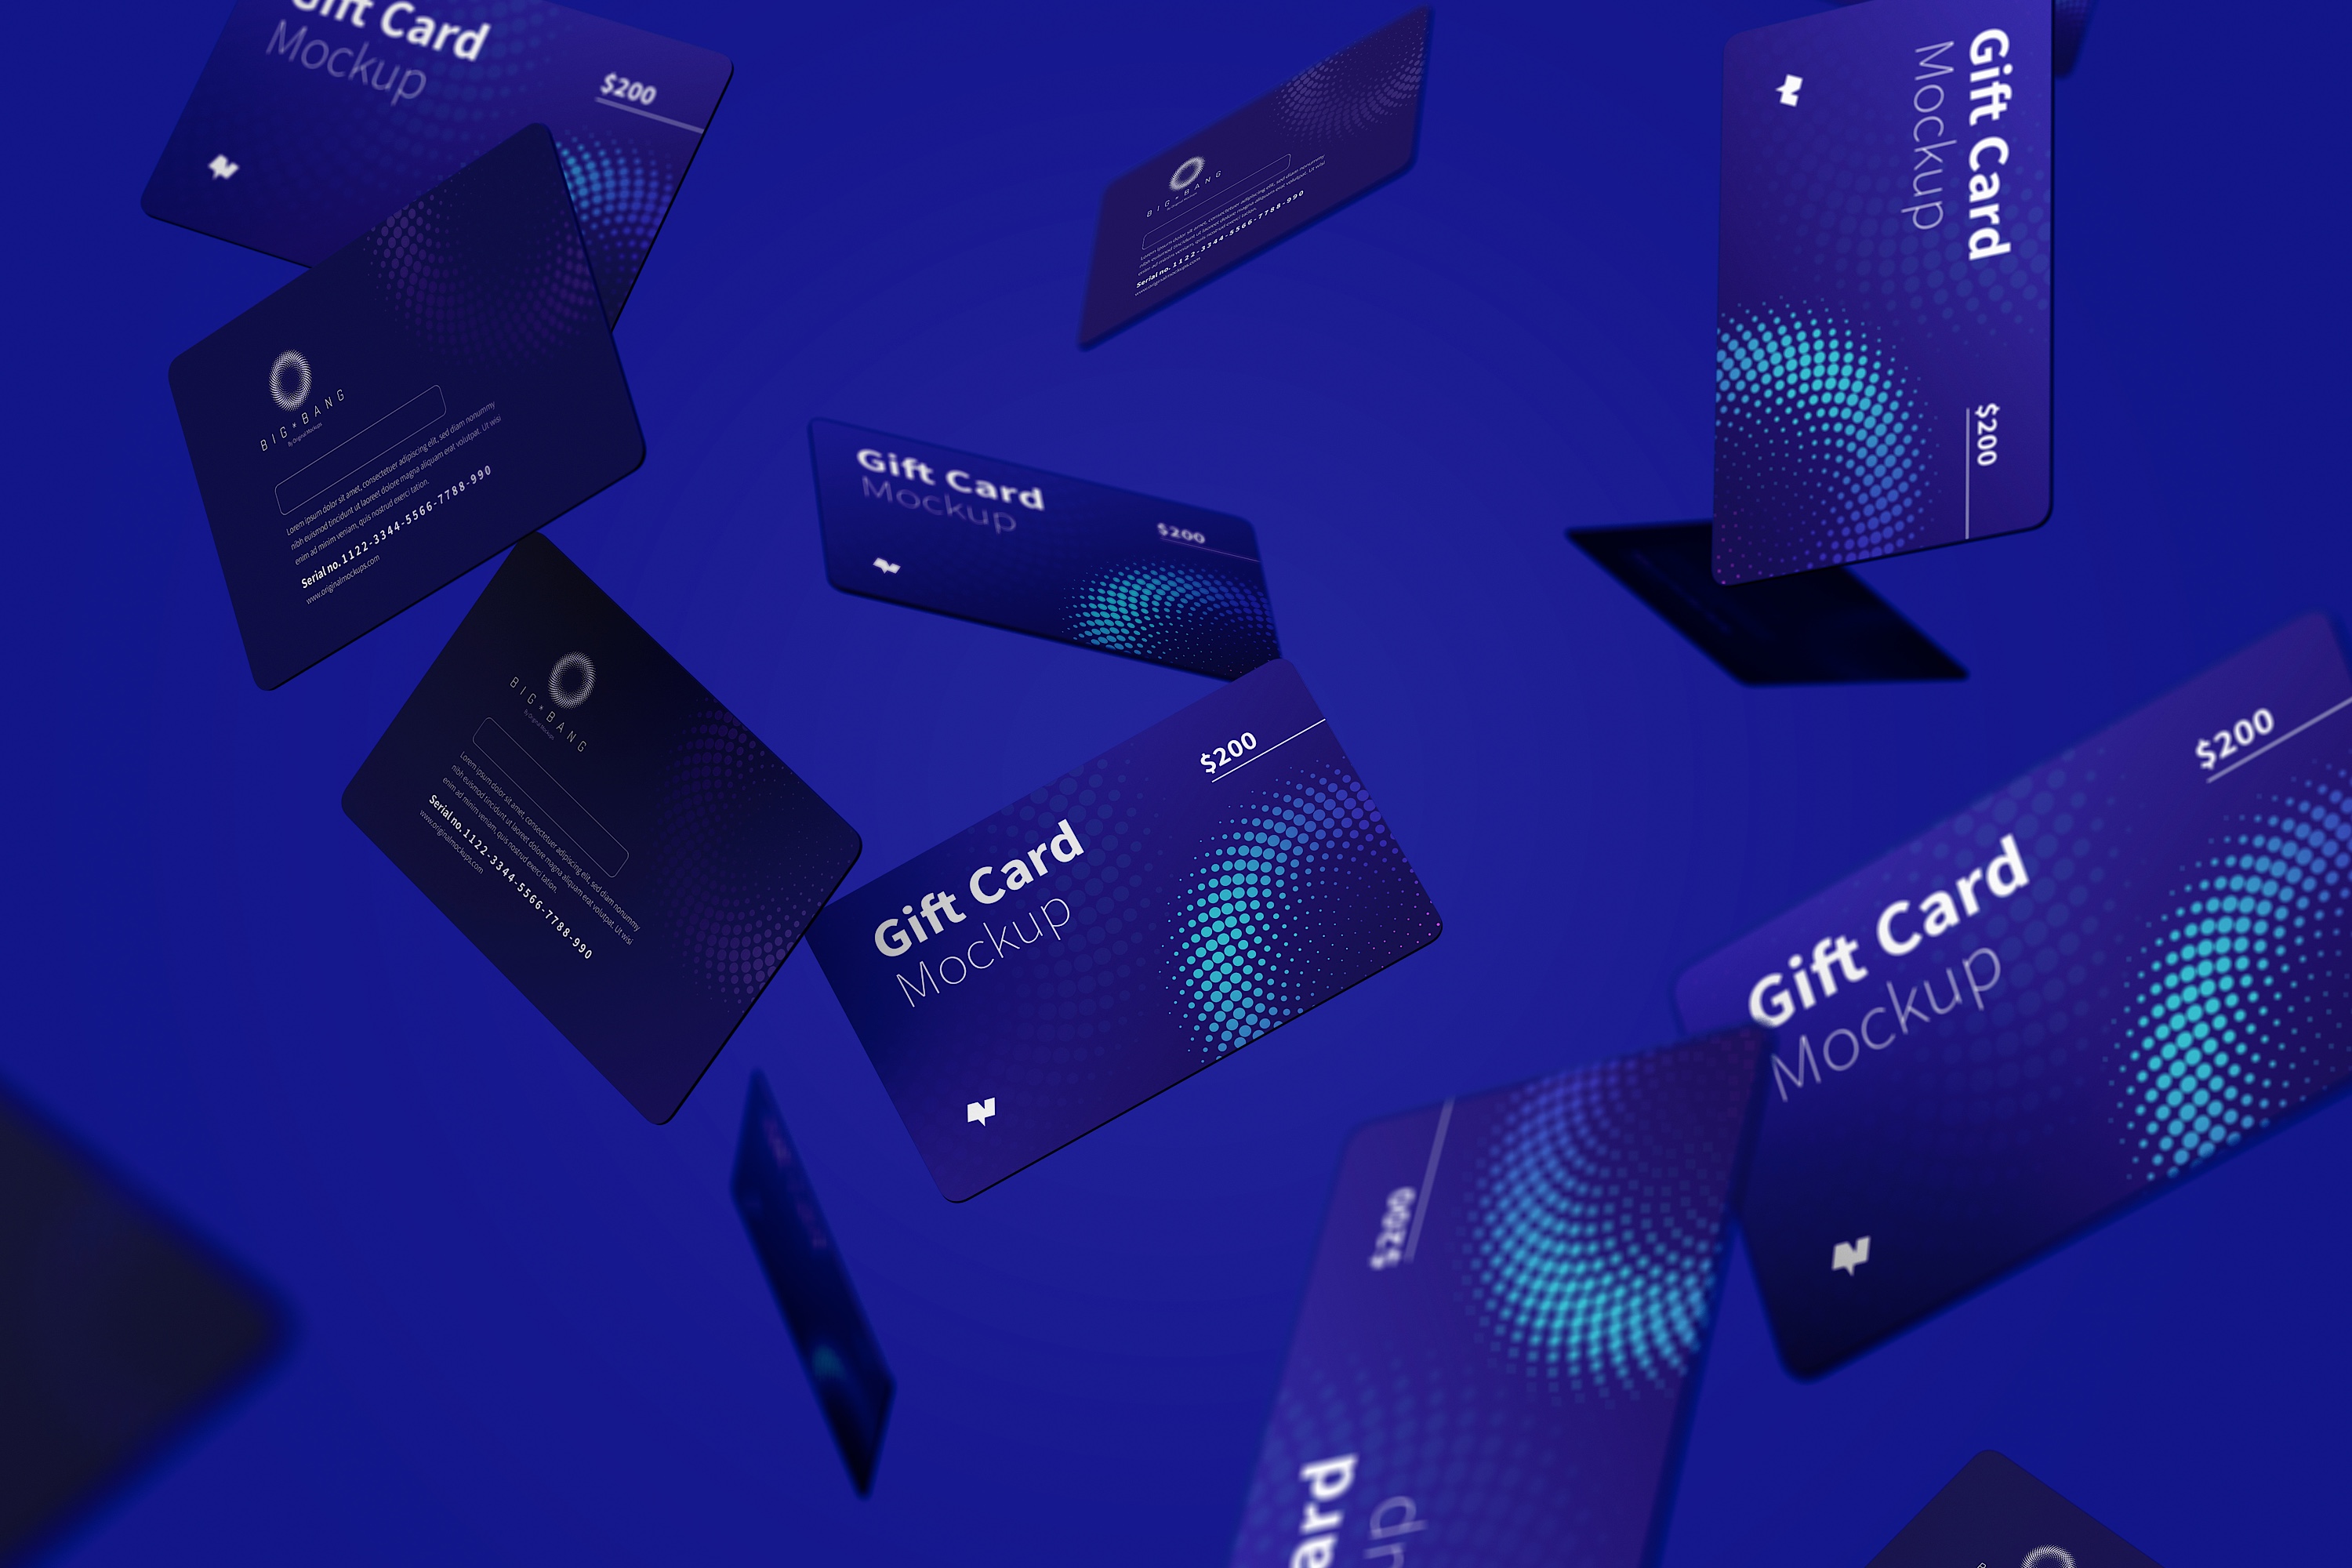 礼品卡积分卡卡片设计设计多视角预览样机模板05 Gift Card Mockup 05插图(4)